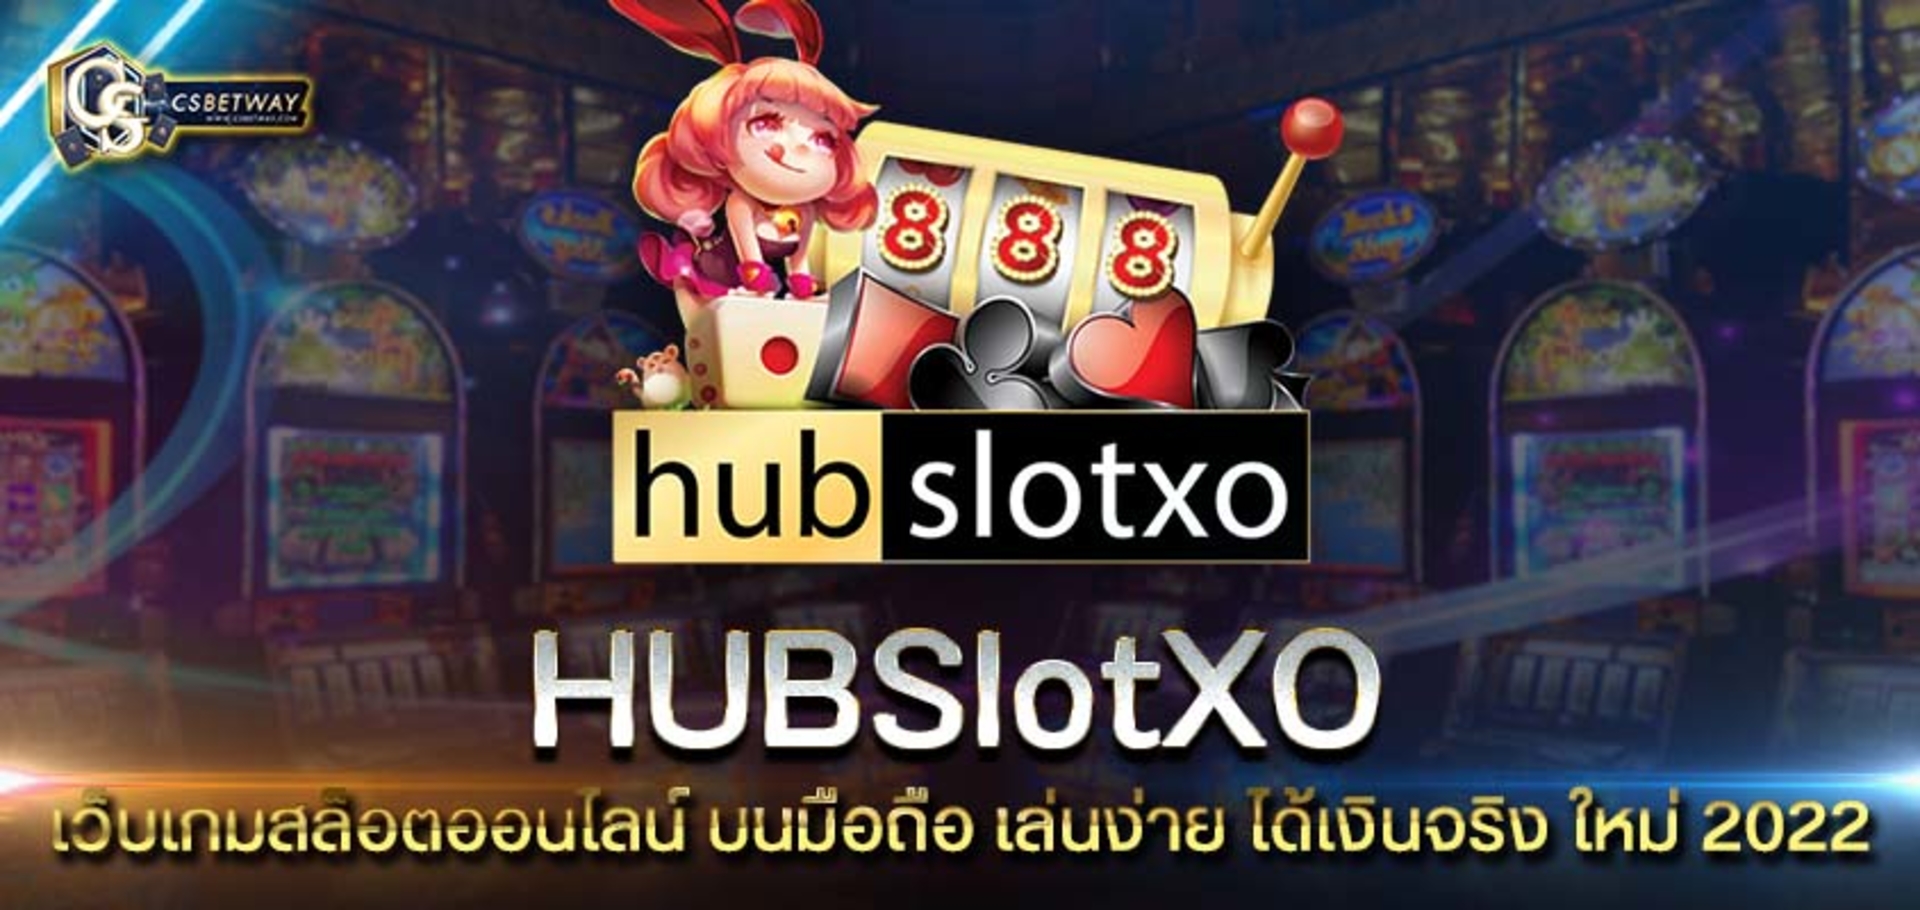 hubslotxo เว็บเกมสล็อตออนไลน์ บนมือถือ เล่นง่าย ได้เงินจริง ใหม่ 2022